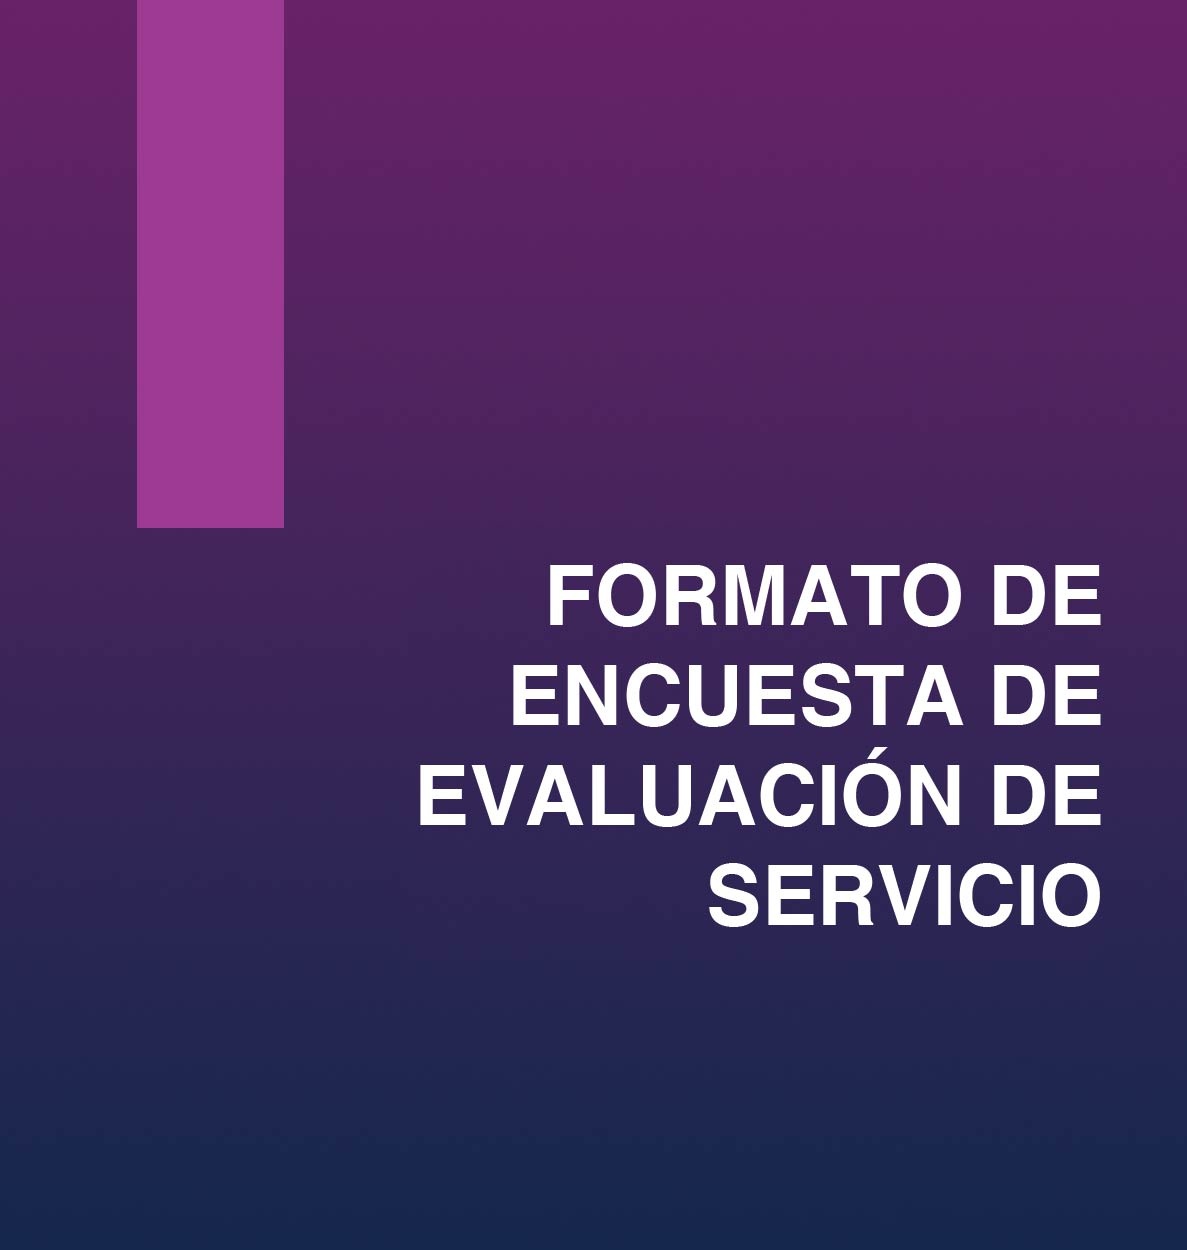 Formato_de_encuesta_de_evaluacion_de_servicio